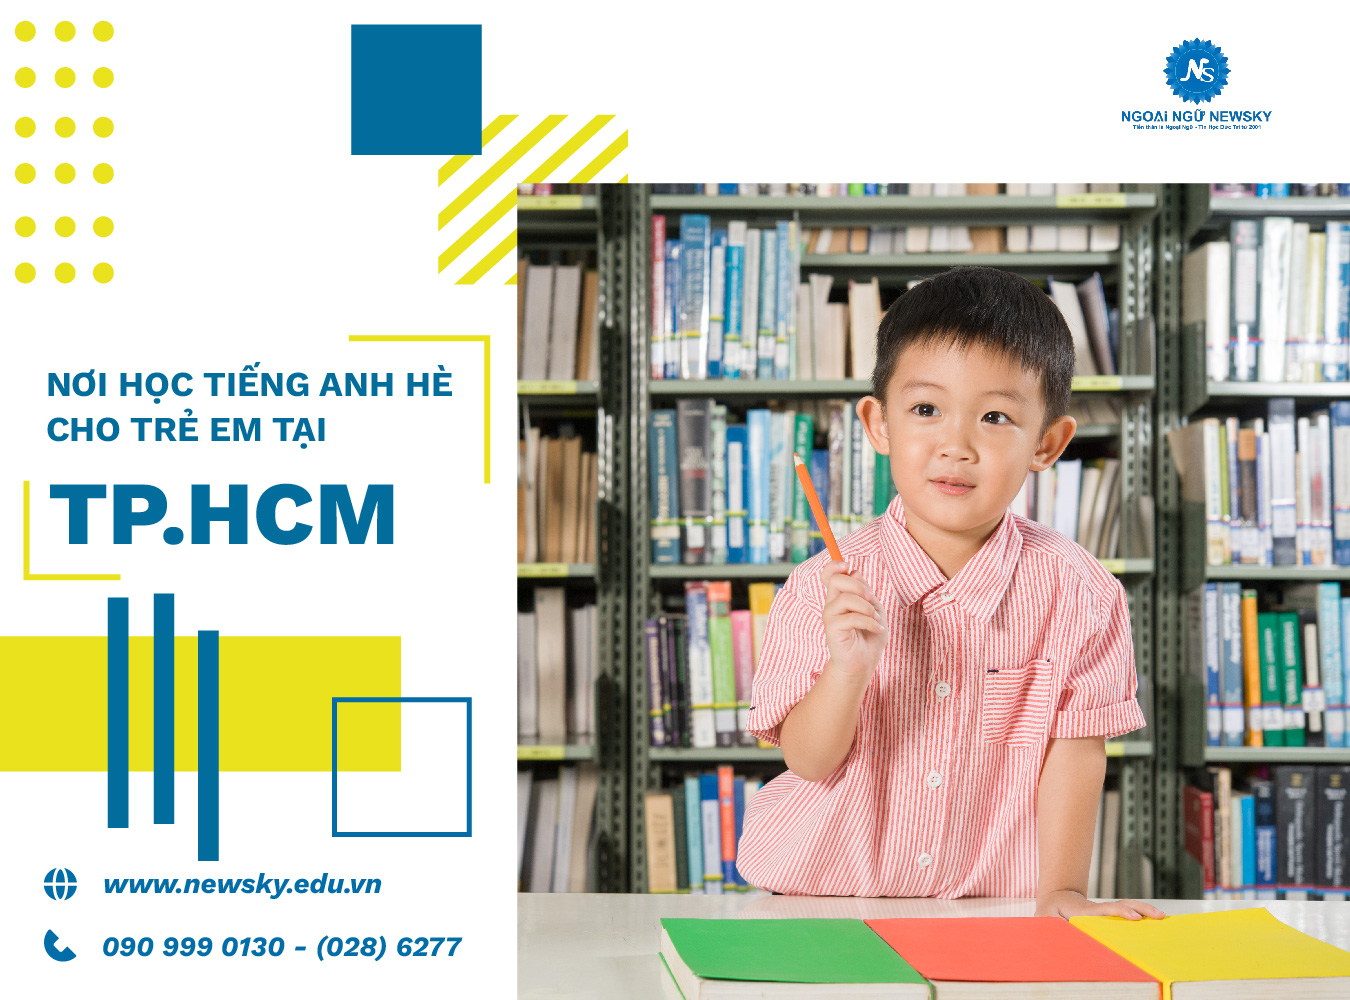 Nơi học Tiếng Anh hè cho trẻ em tại TpHCM